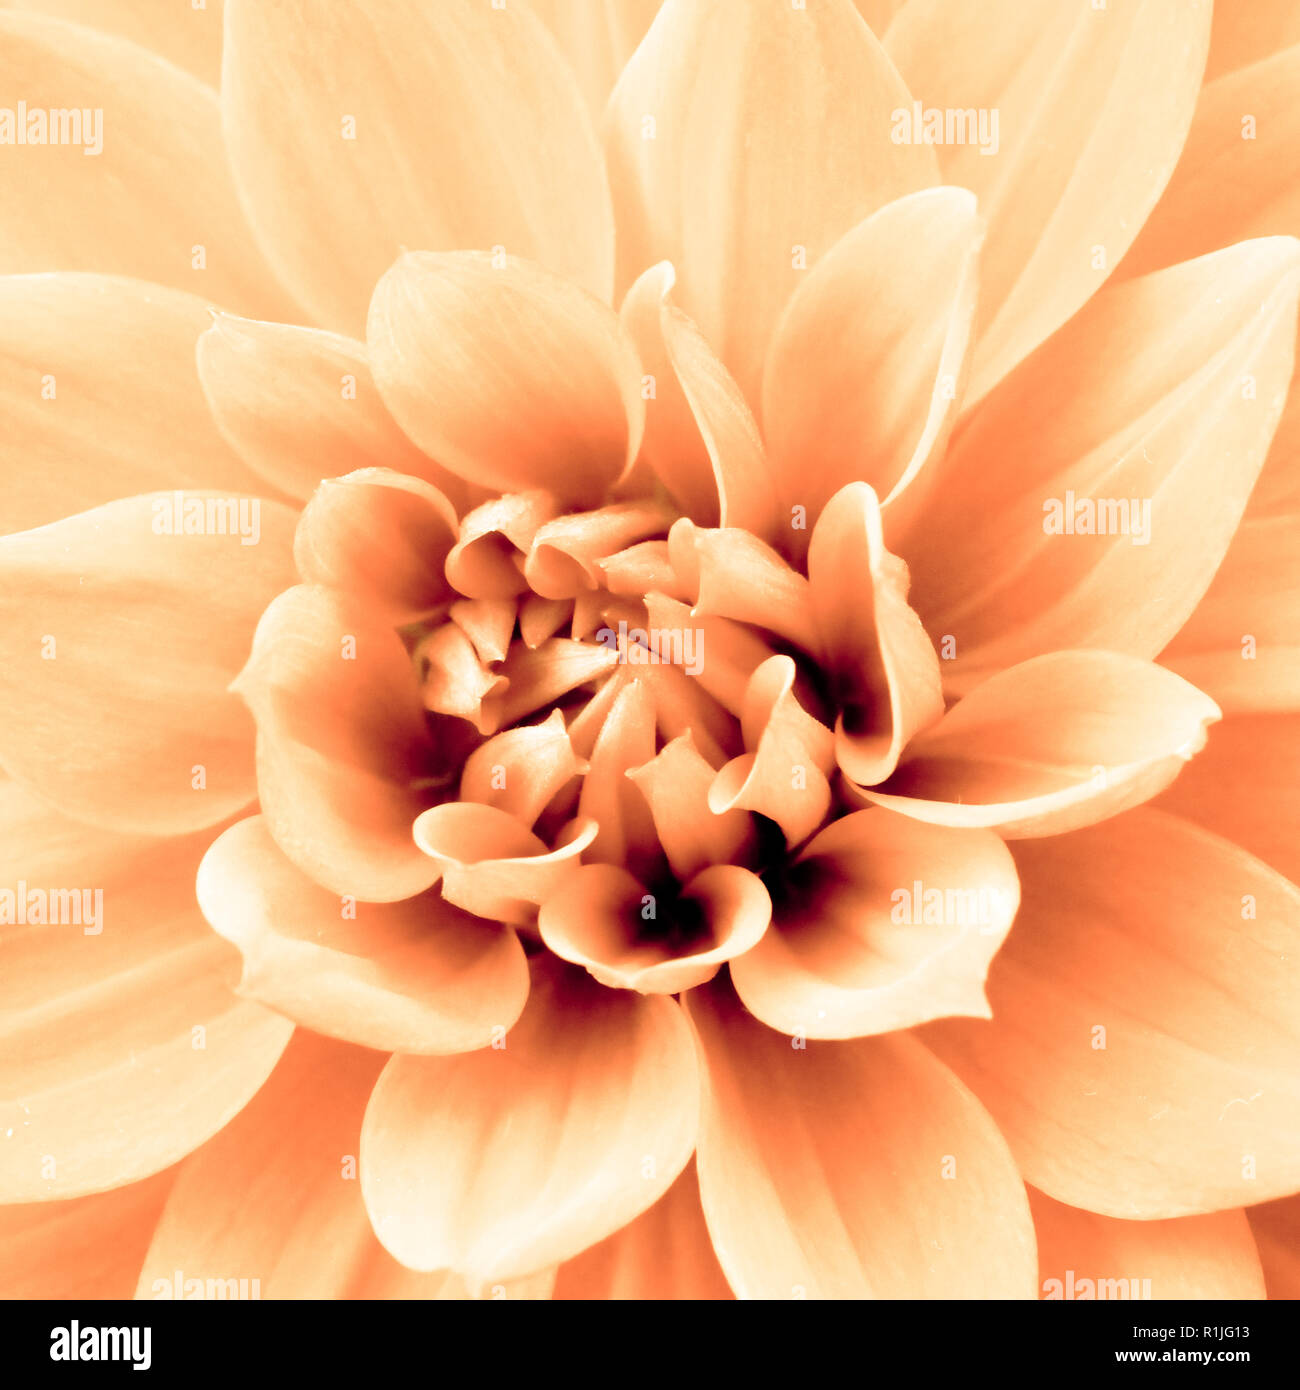 La lumière jaune orange fleur dahlia photo macro photo de couleur soulignant la lumière couleurs orange et marron ombres dans un motif géométrique complexe. Squ Banque D'Images